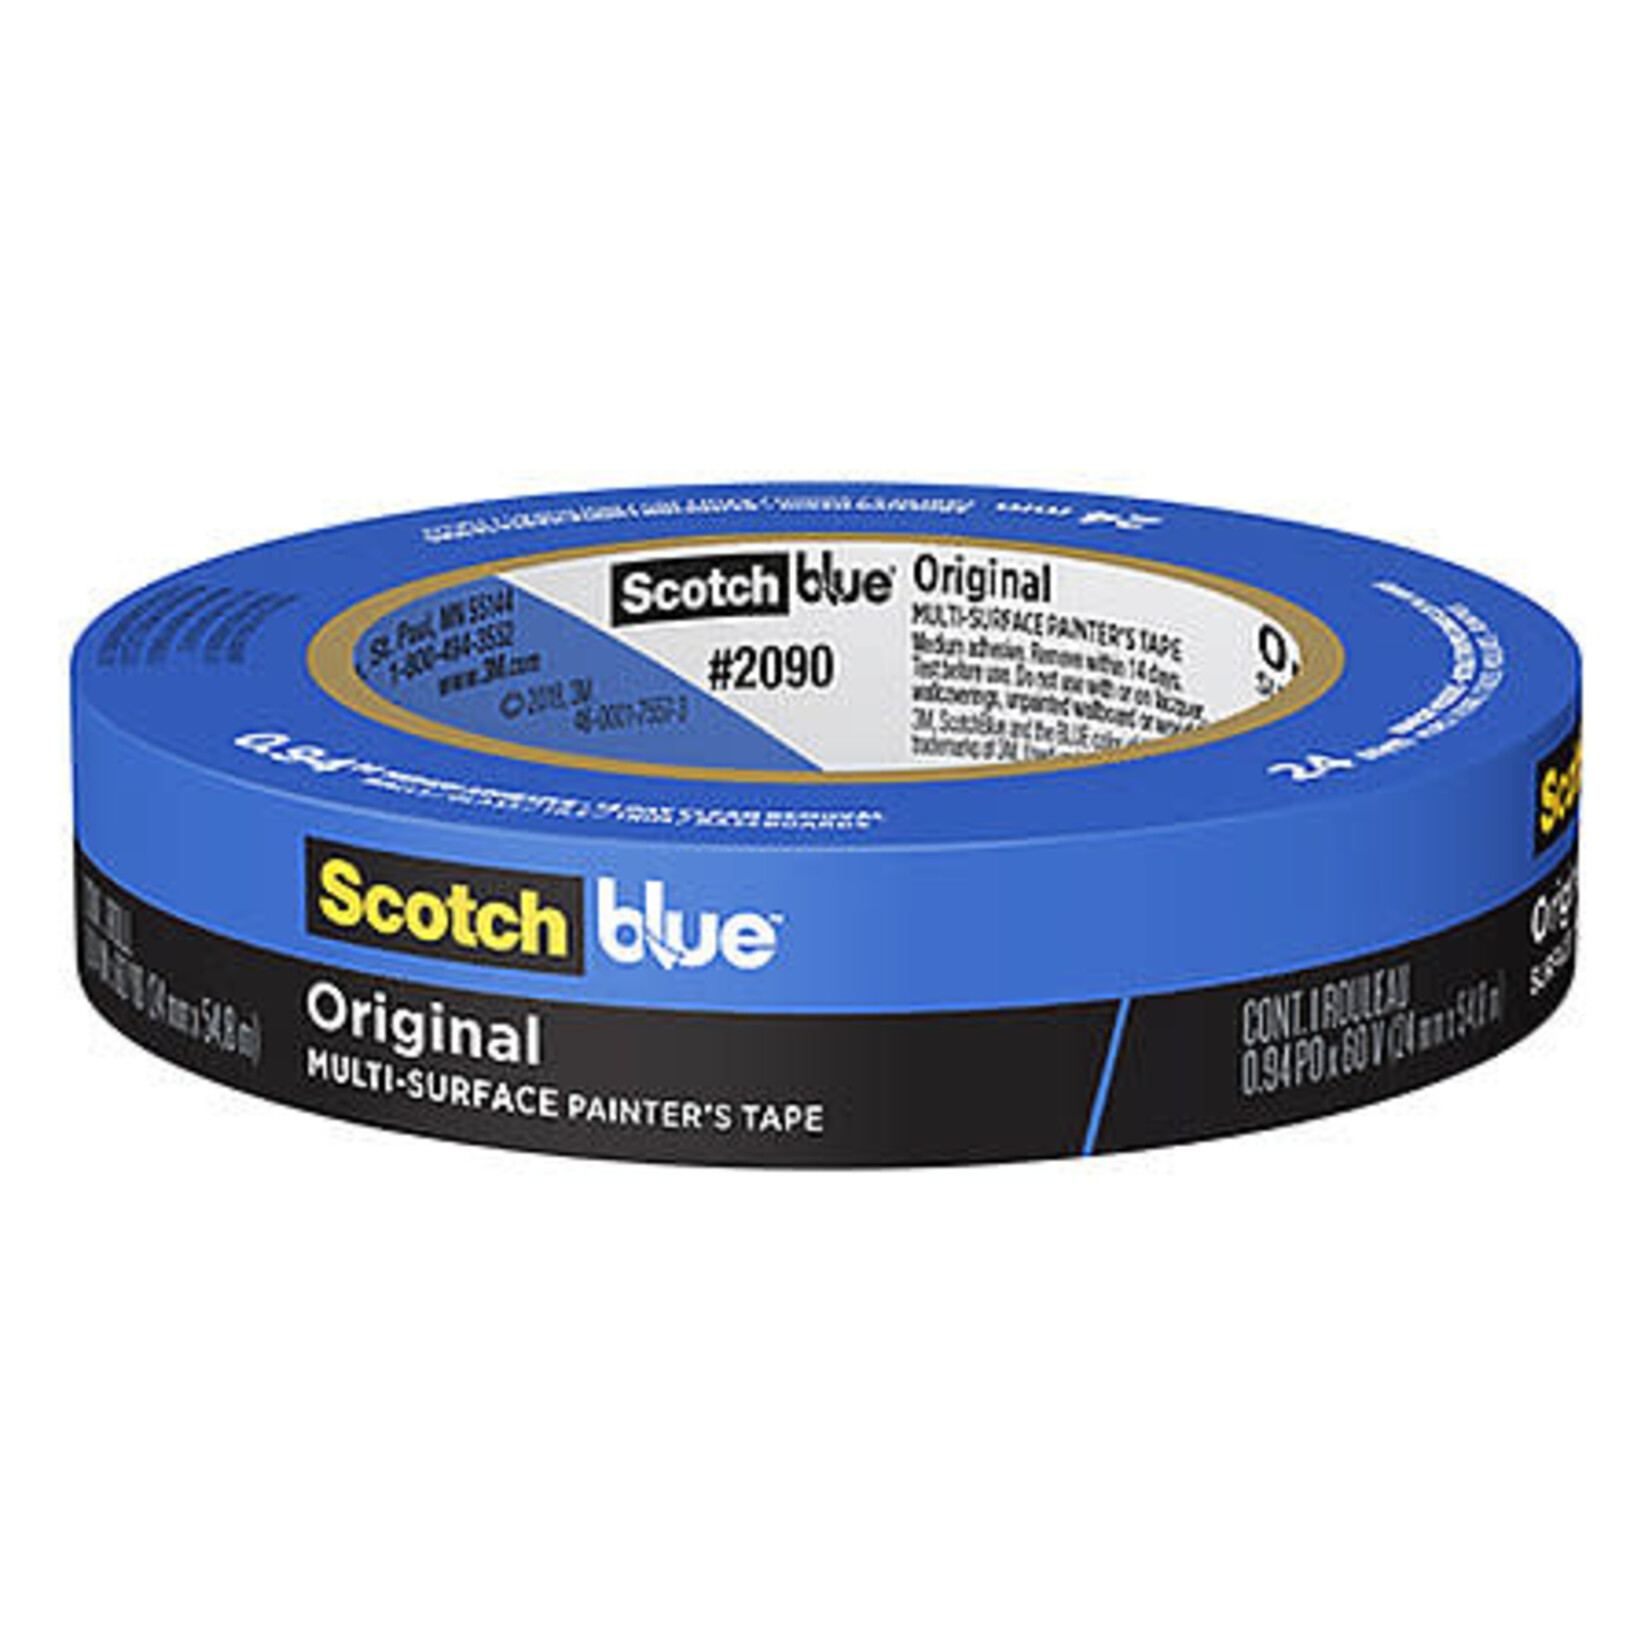 Scotch 3m Painters Tape, Blue - Delicate .94''X60Y